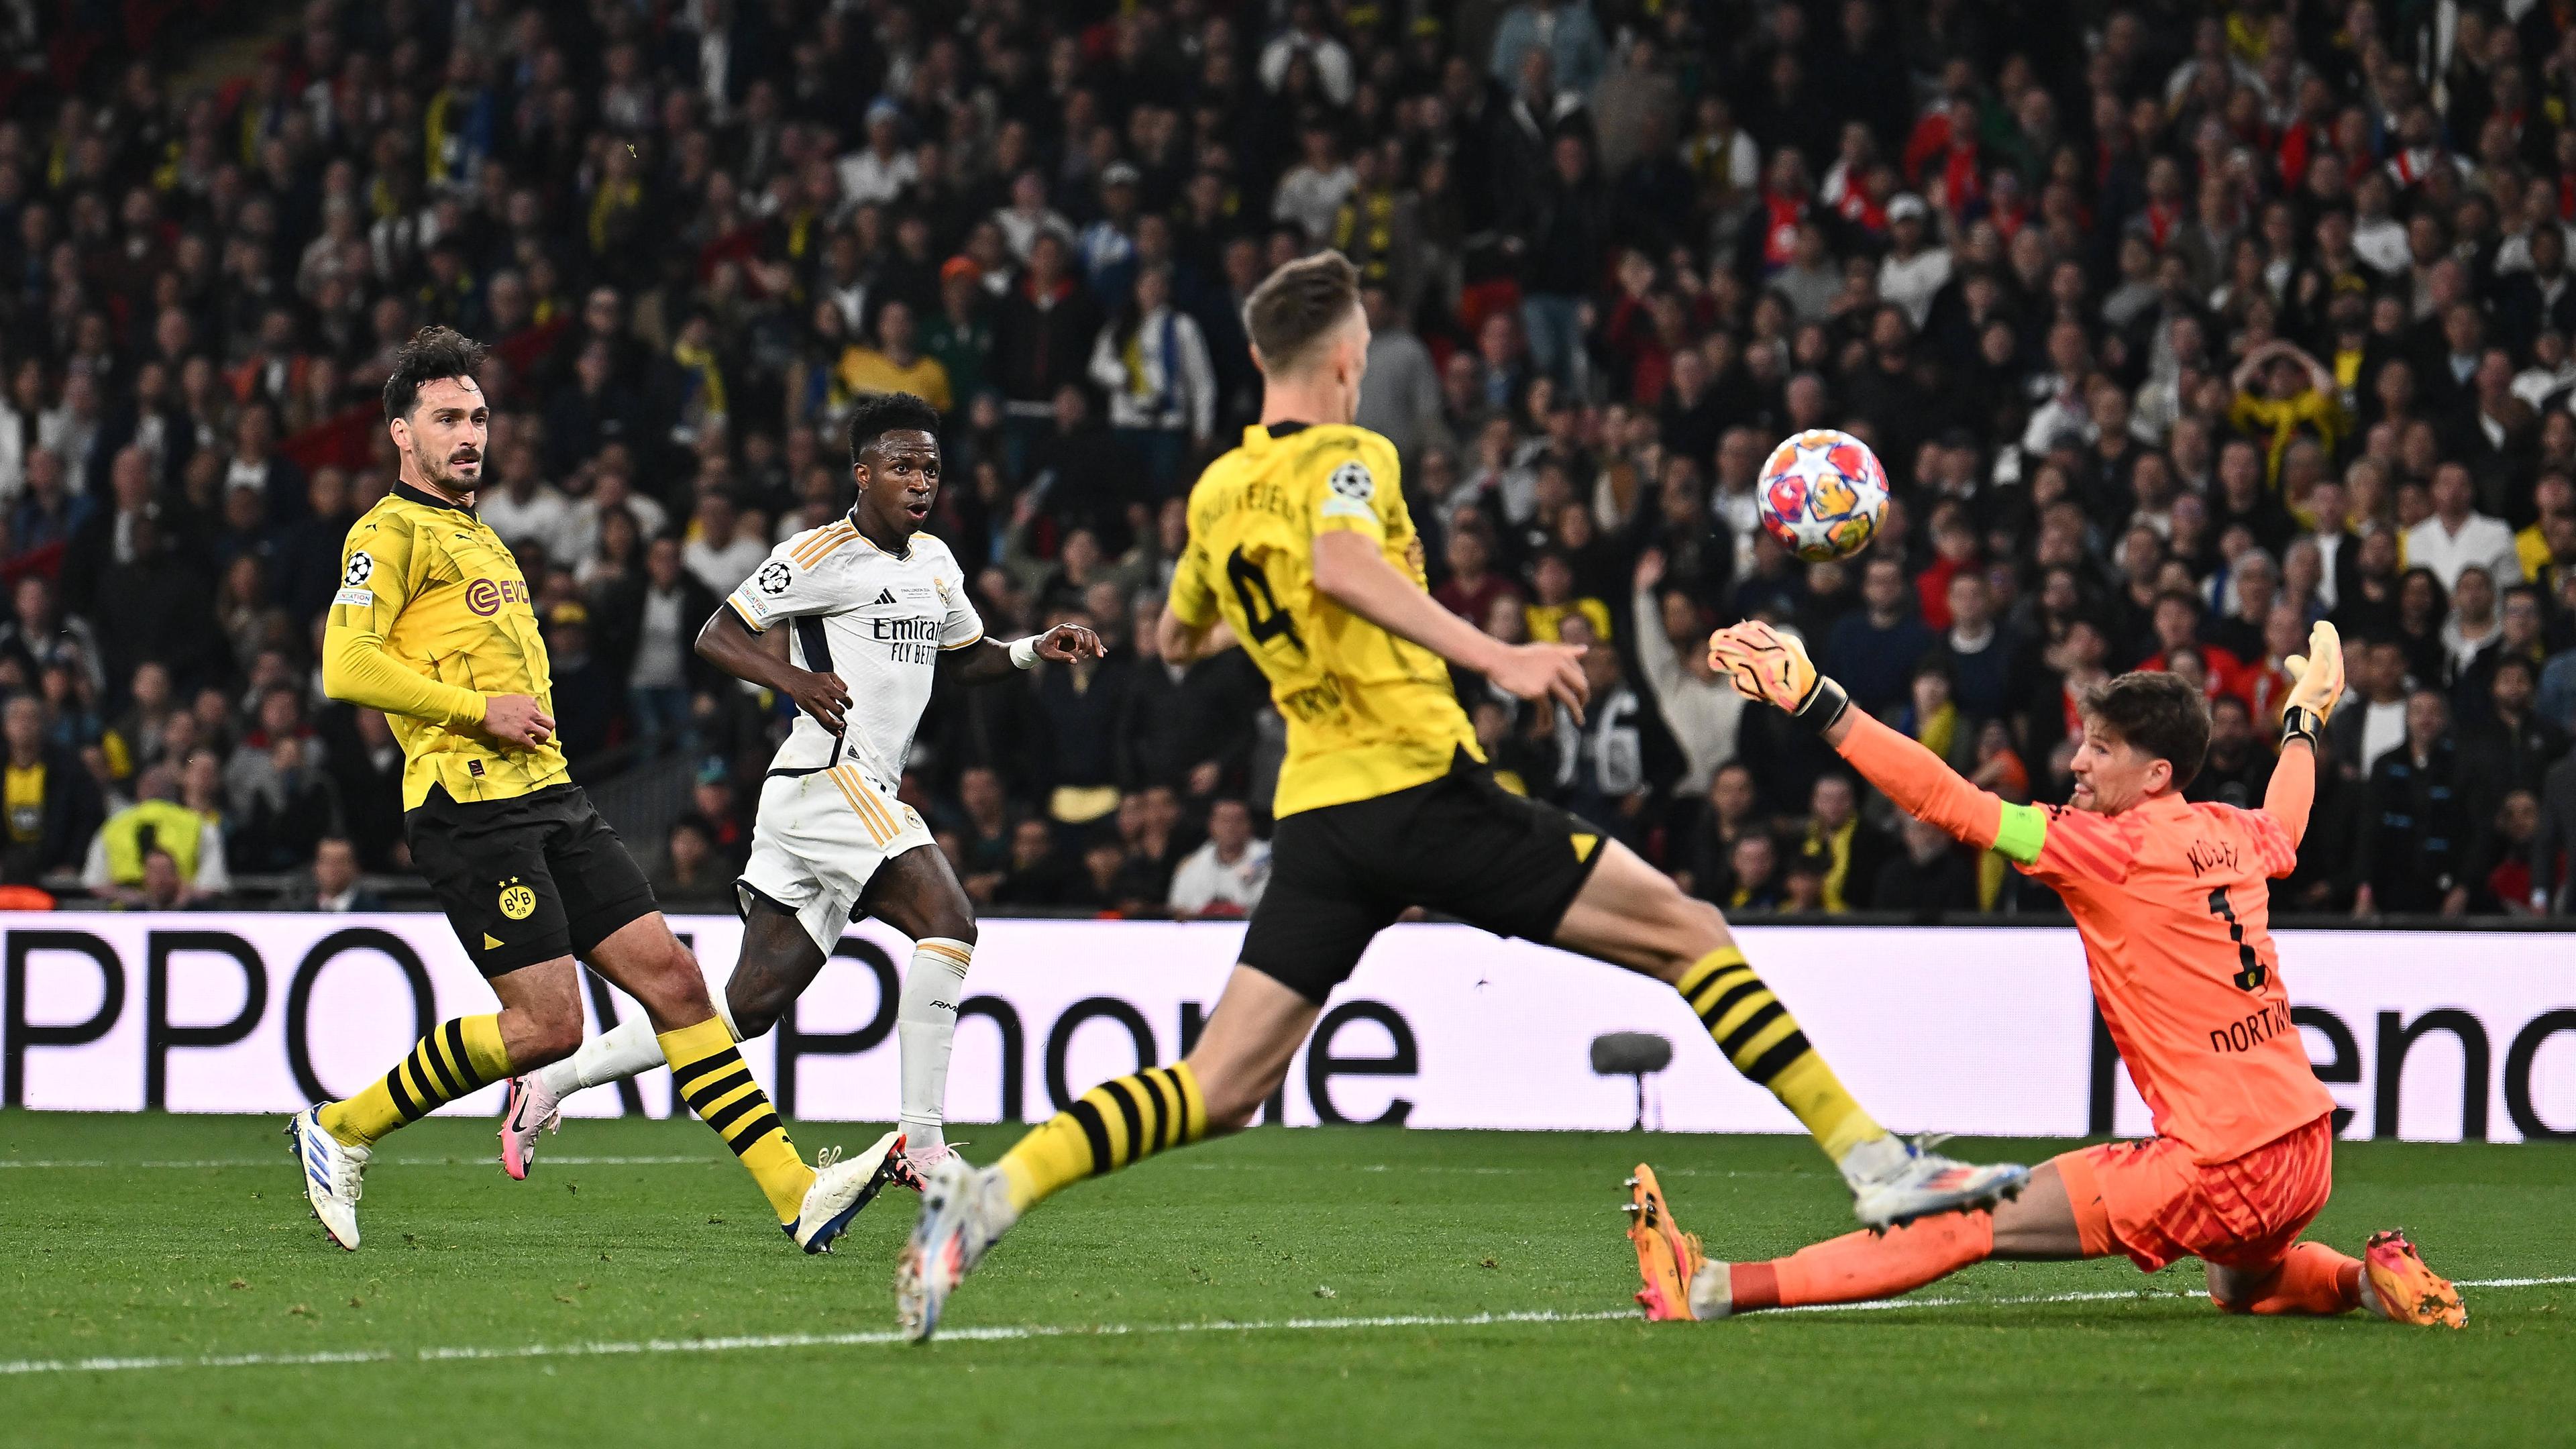 Vinicius Junior (Real Madrid) schießt das Tor zum 2:0 gegen Borussia Dortmund.